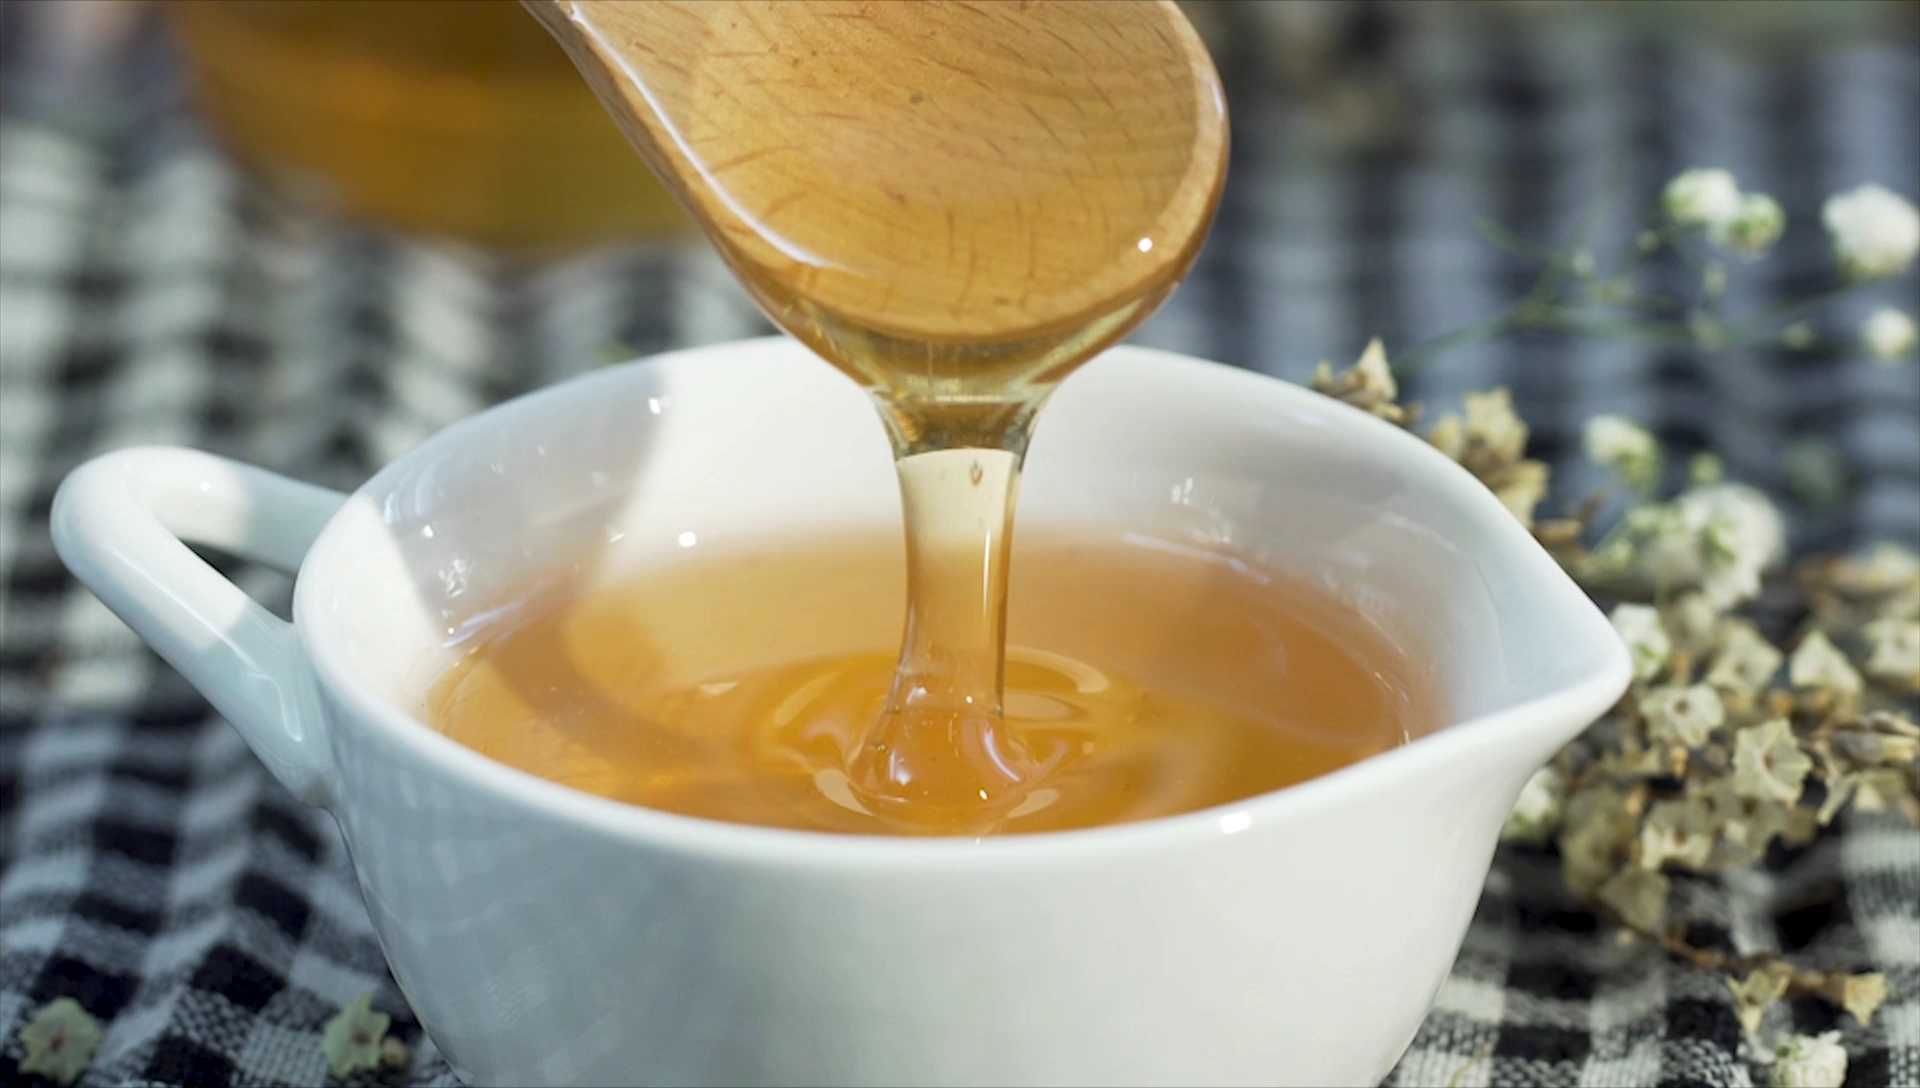 3 chai  Mật ong nguyên chất hoa rừng tây bắc Phúc Khang  (350g) - Hàng Chính Hãng  - Mật ong sạch , mật ong cao cấp đạt tiêu chuẩn xuất khẩu - Bồi bổ cơ thể , tăng sức đề kháng 